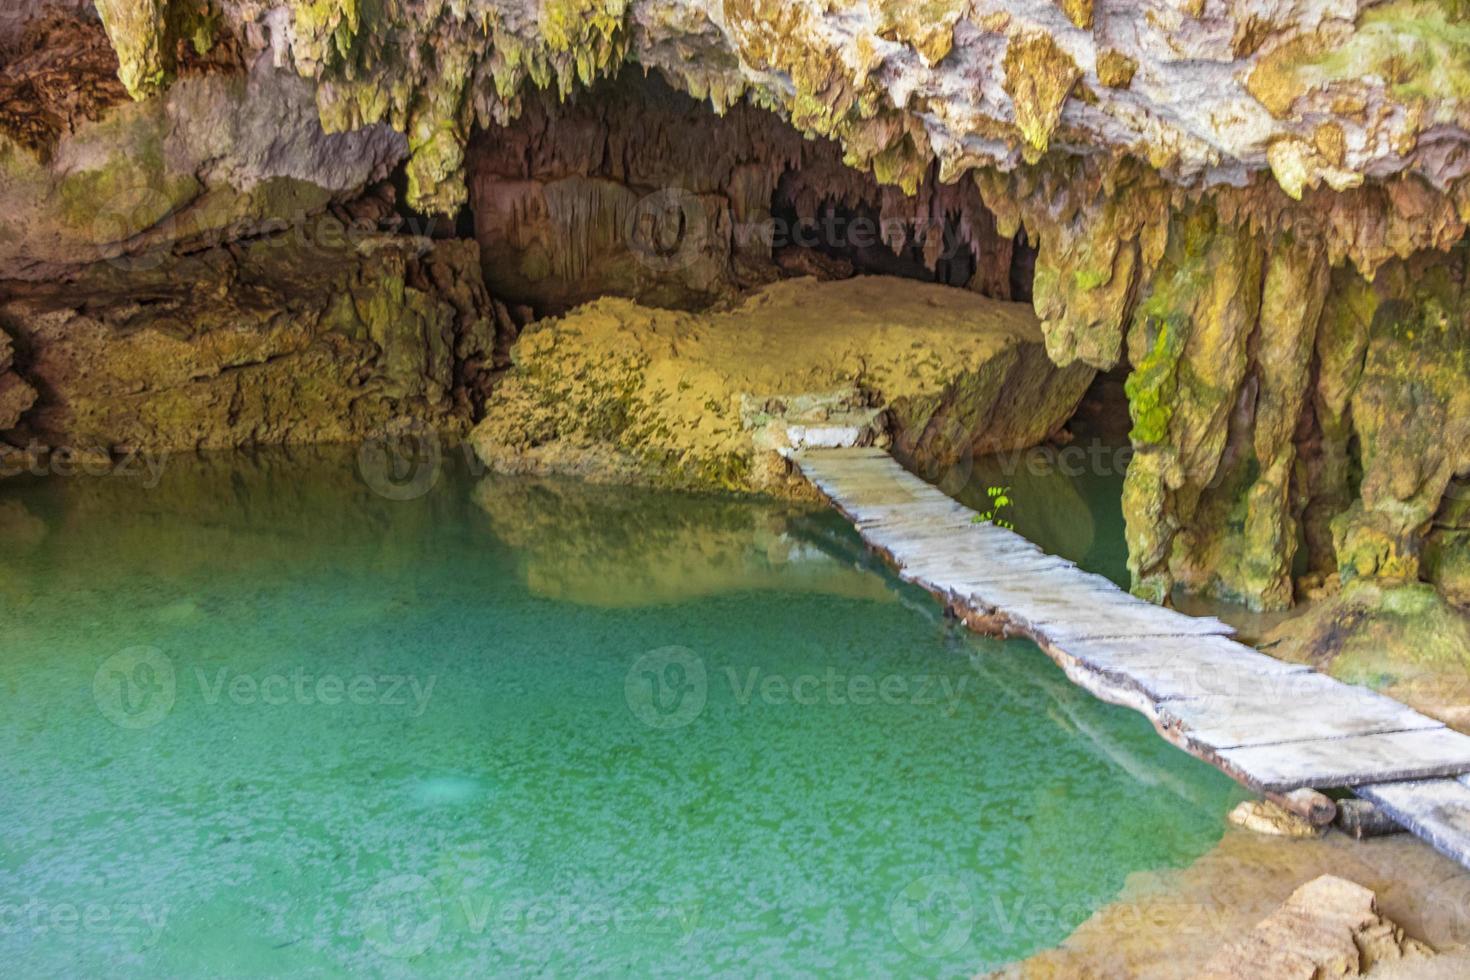 increíble agua azul turquesa y cueva de piedra caliza sumidero cenote méxico. foto